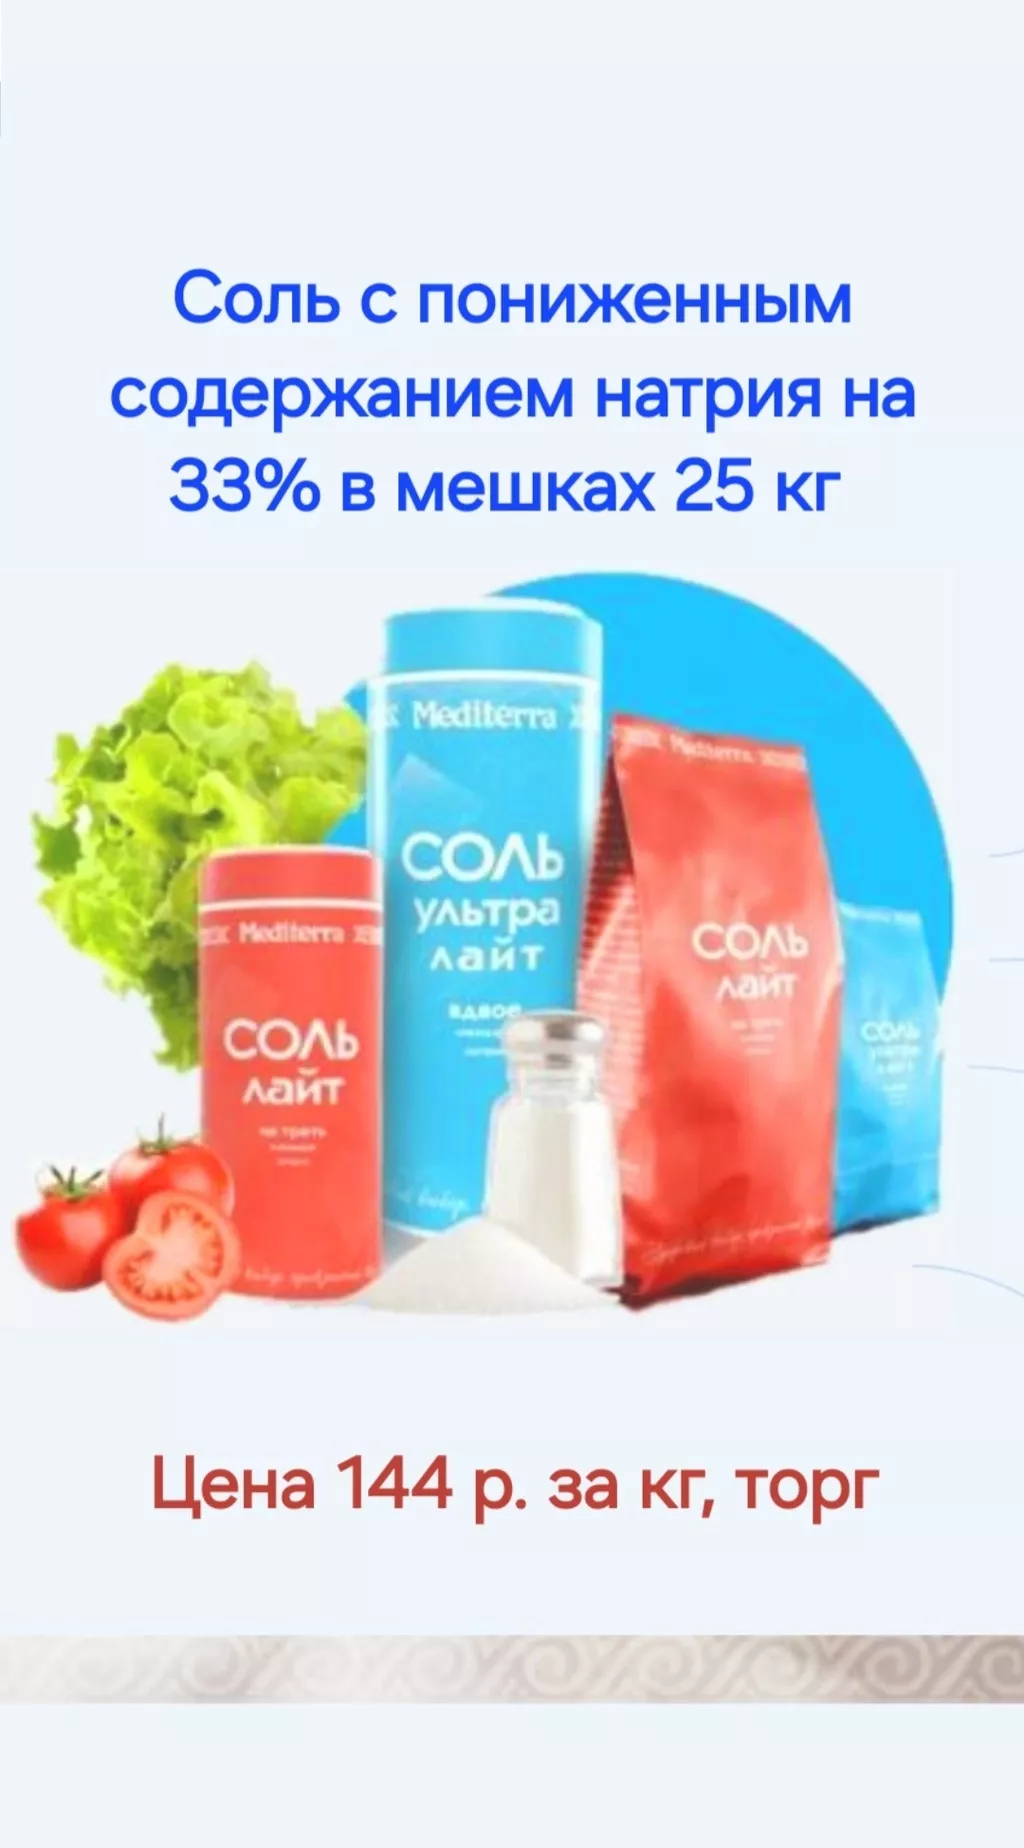 фотография продукта Соль с пониженным содержанием натрия 33%